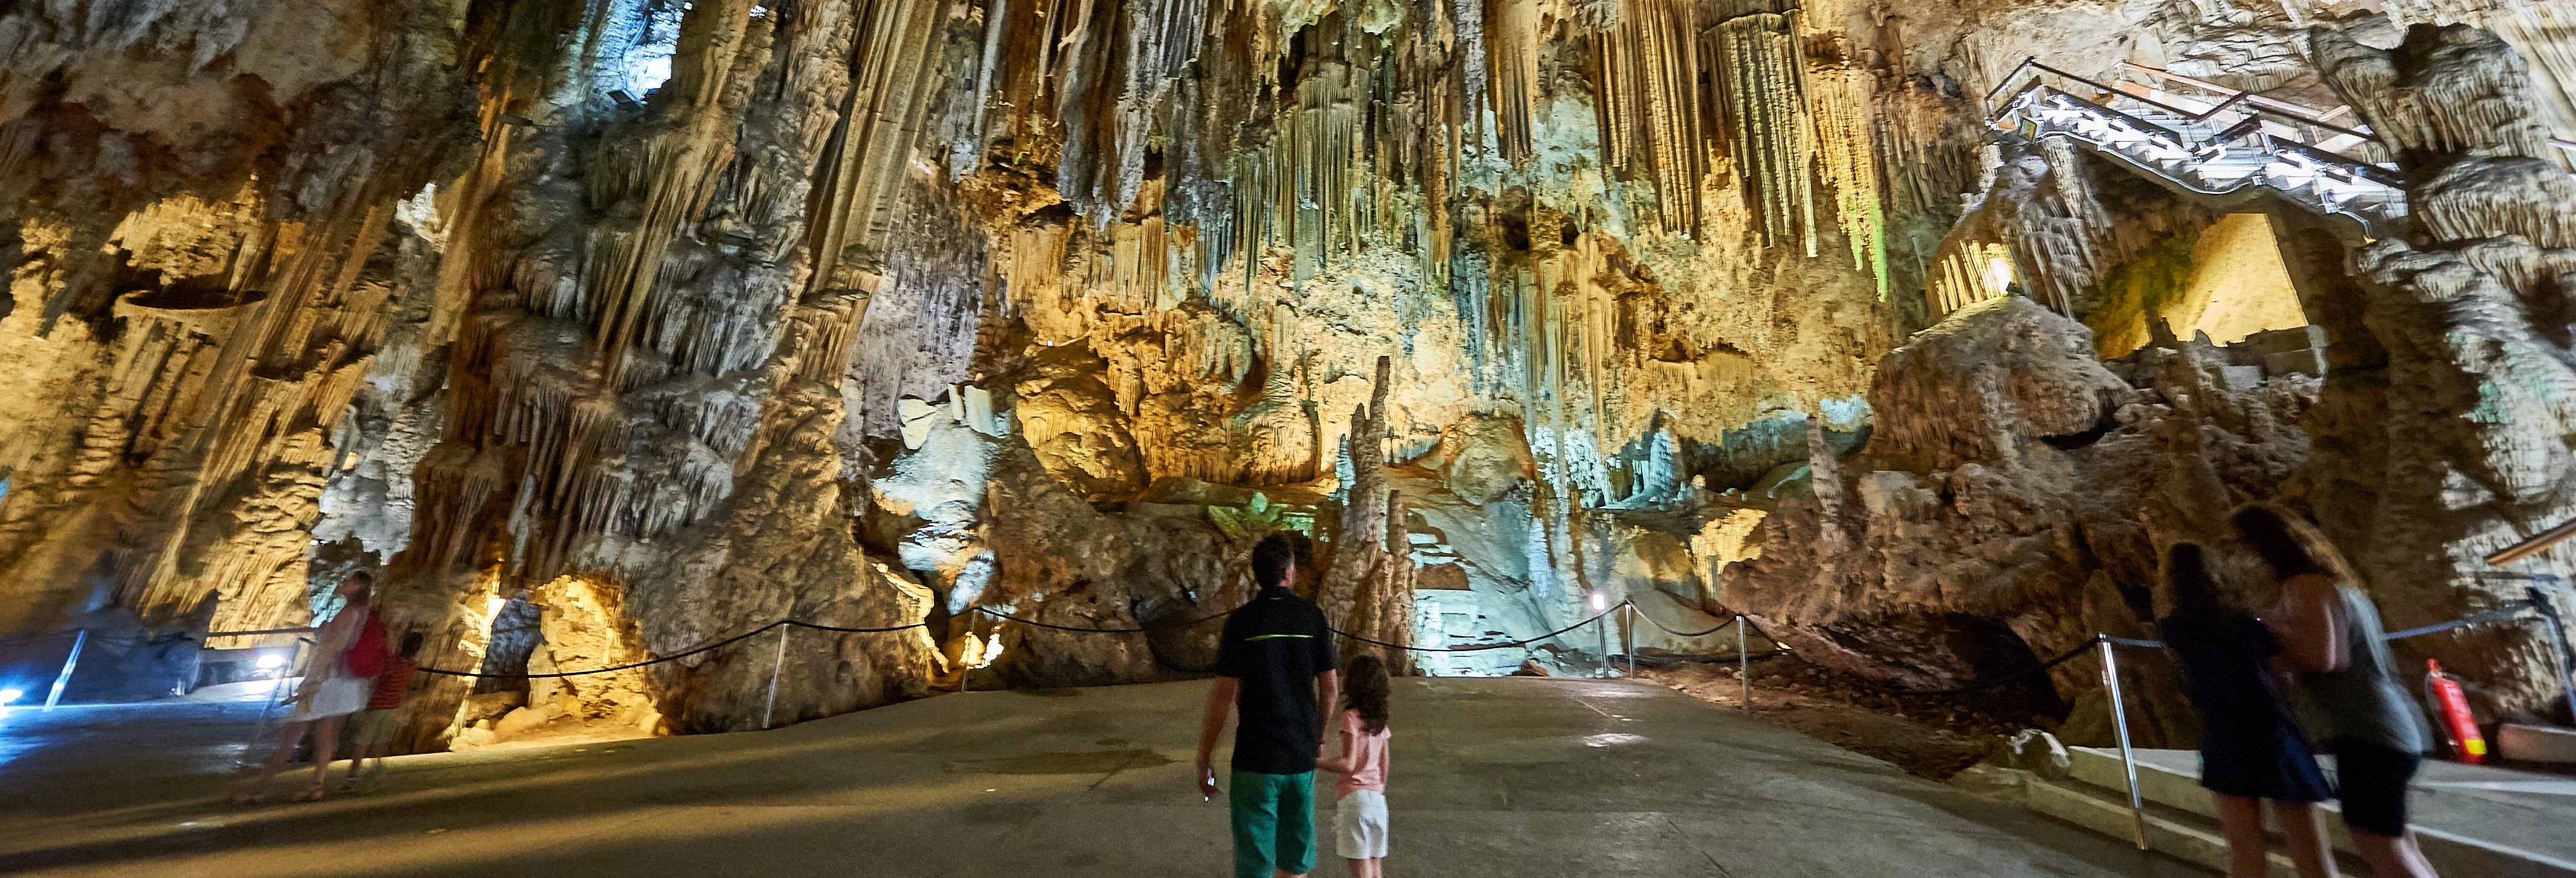 Excursión a la Costa Tropical y la Cueva de Nerja